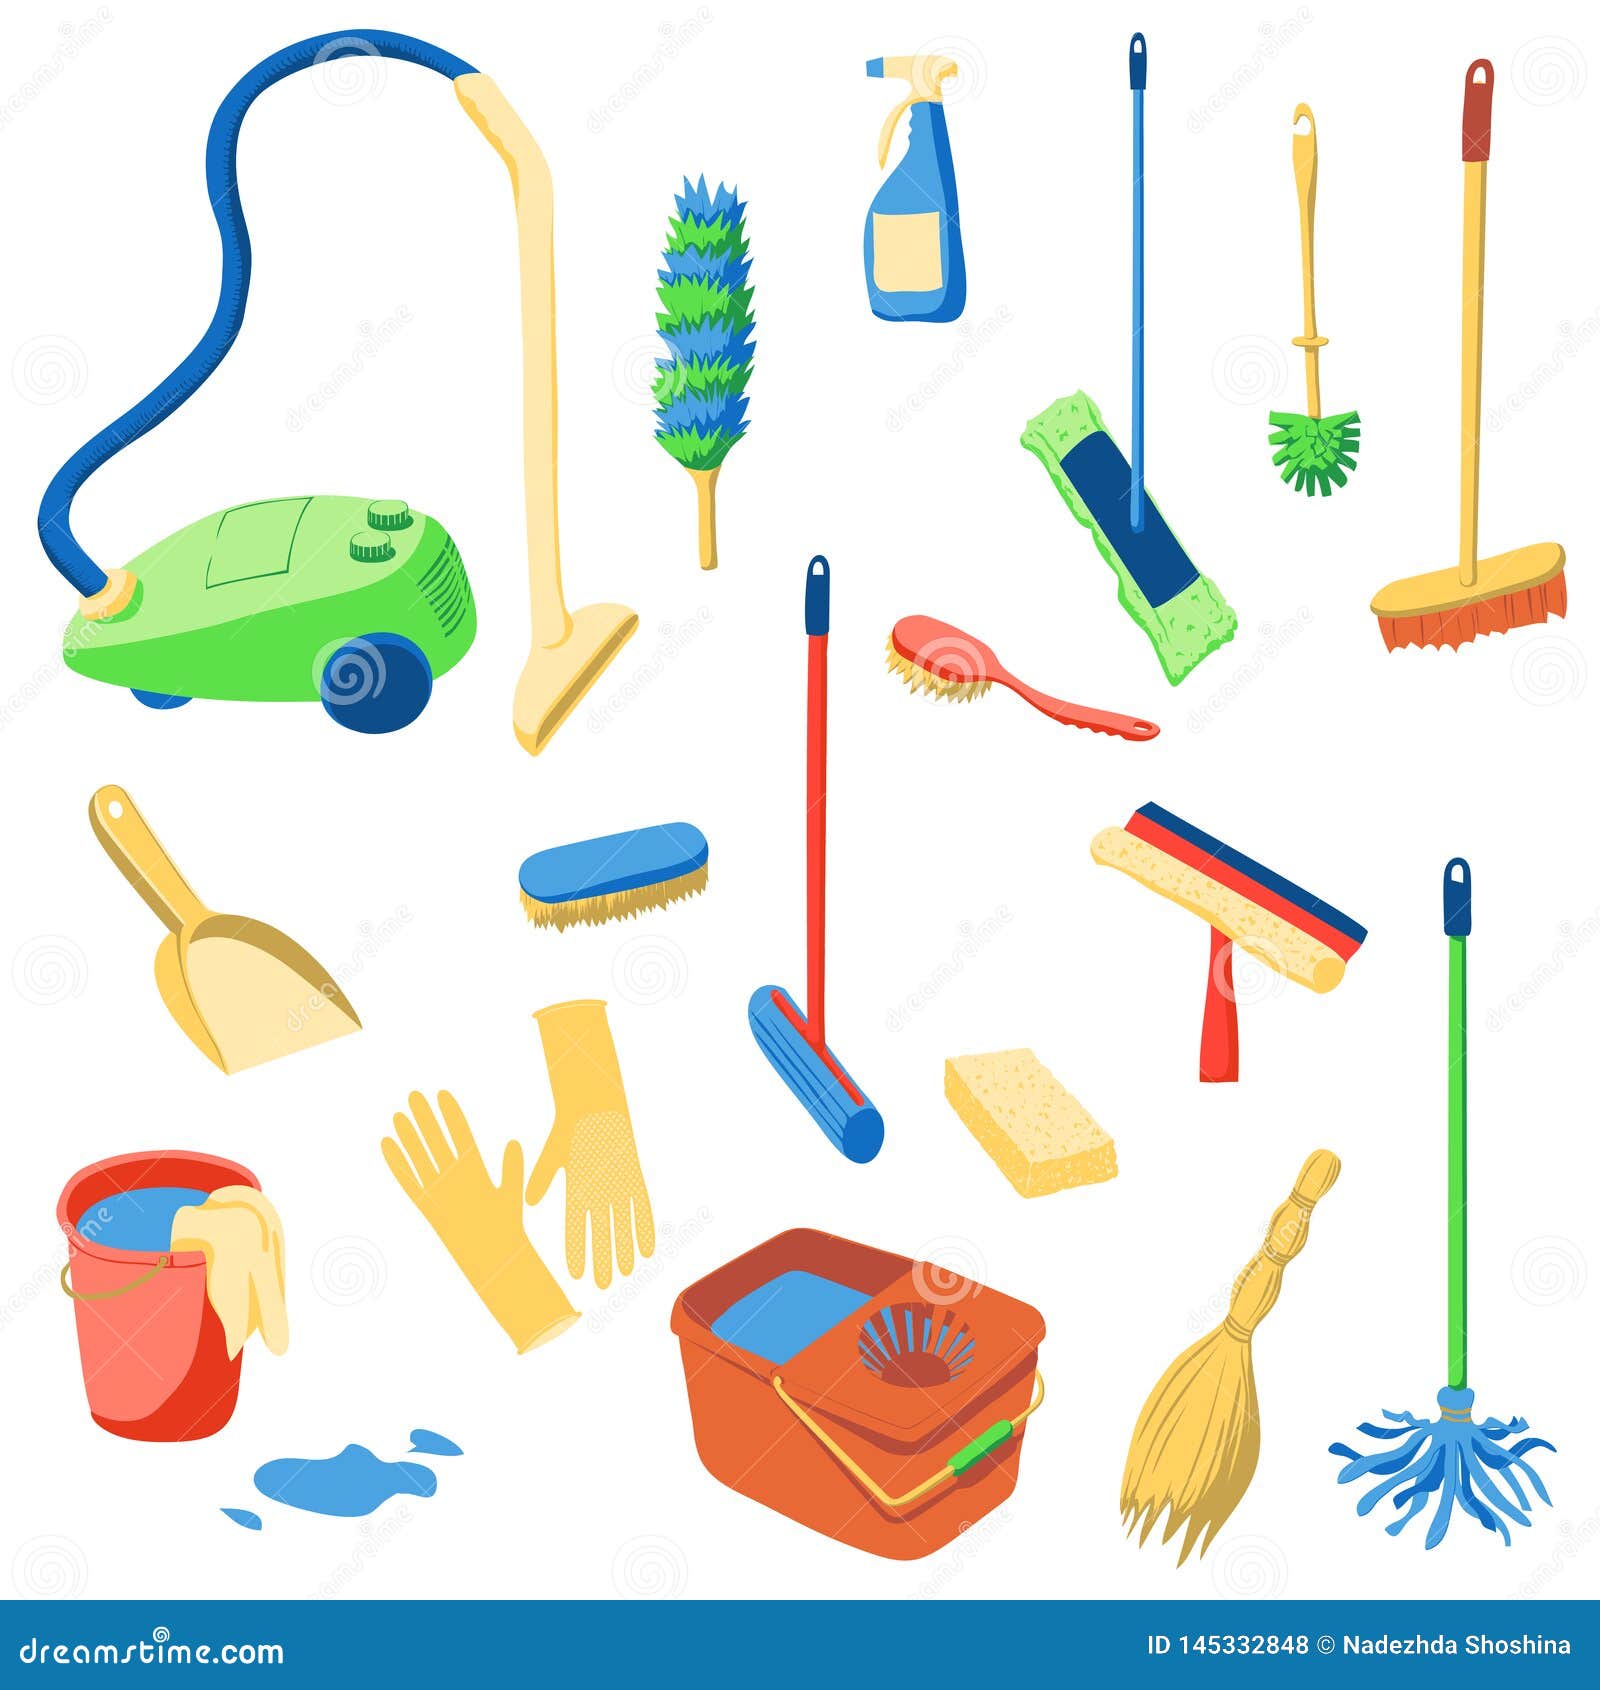 nettoyage. un ensemble d'outils pour nettoyer la maison, isolé sur